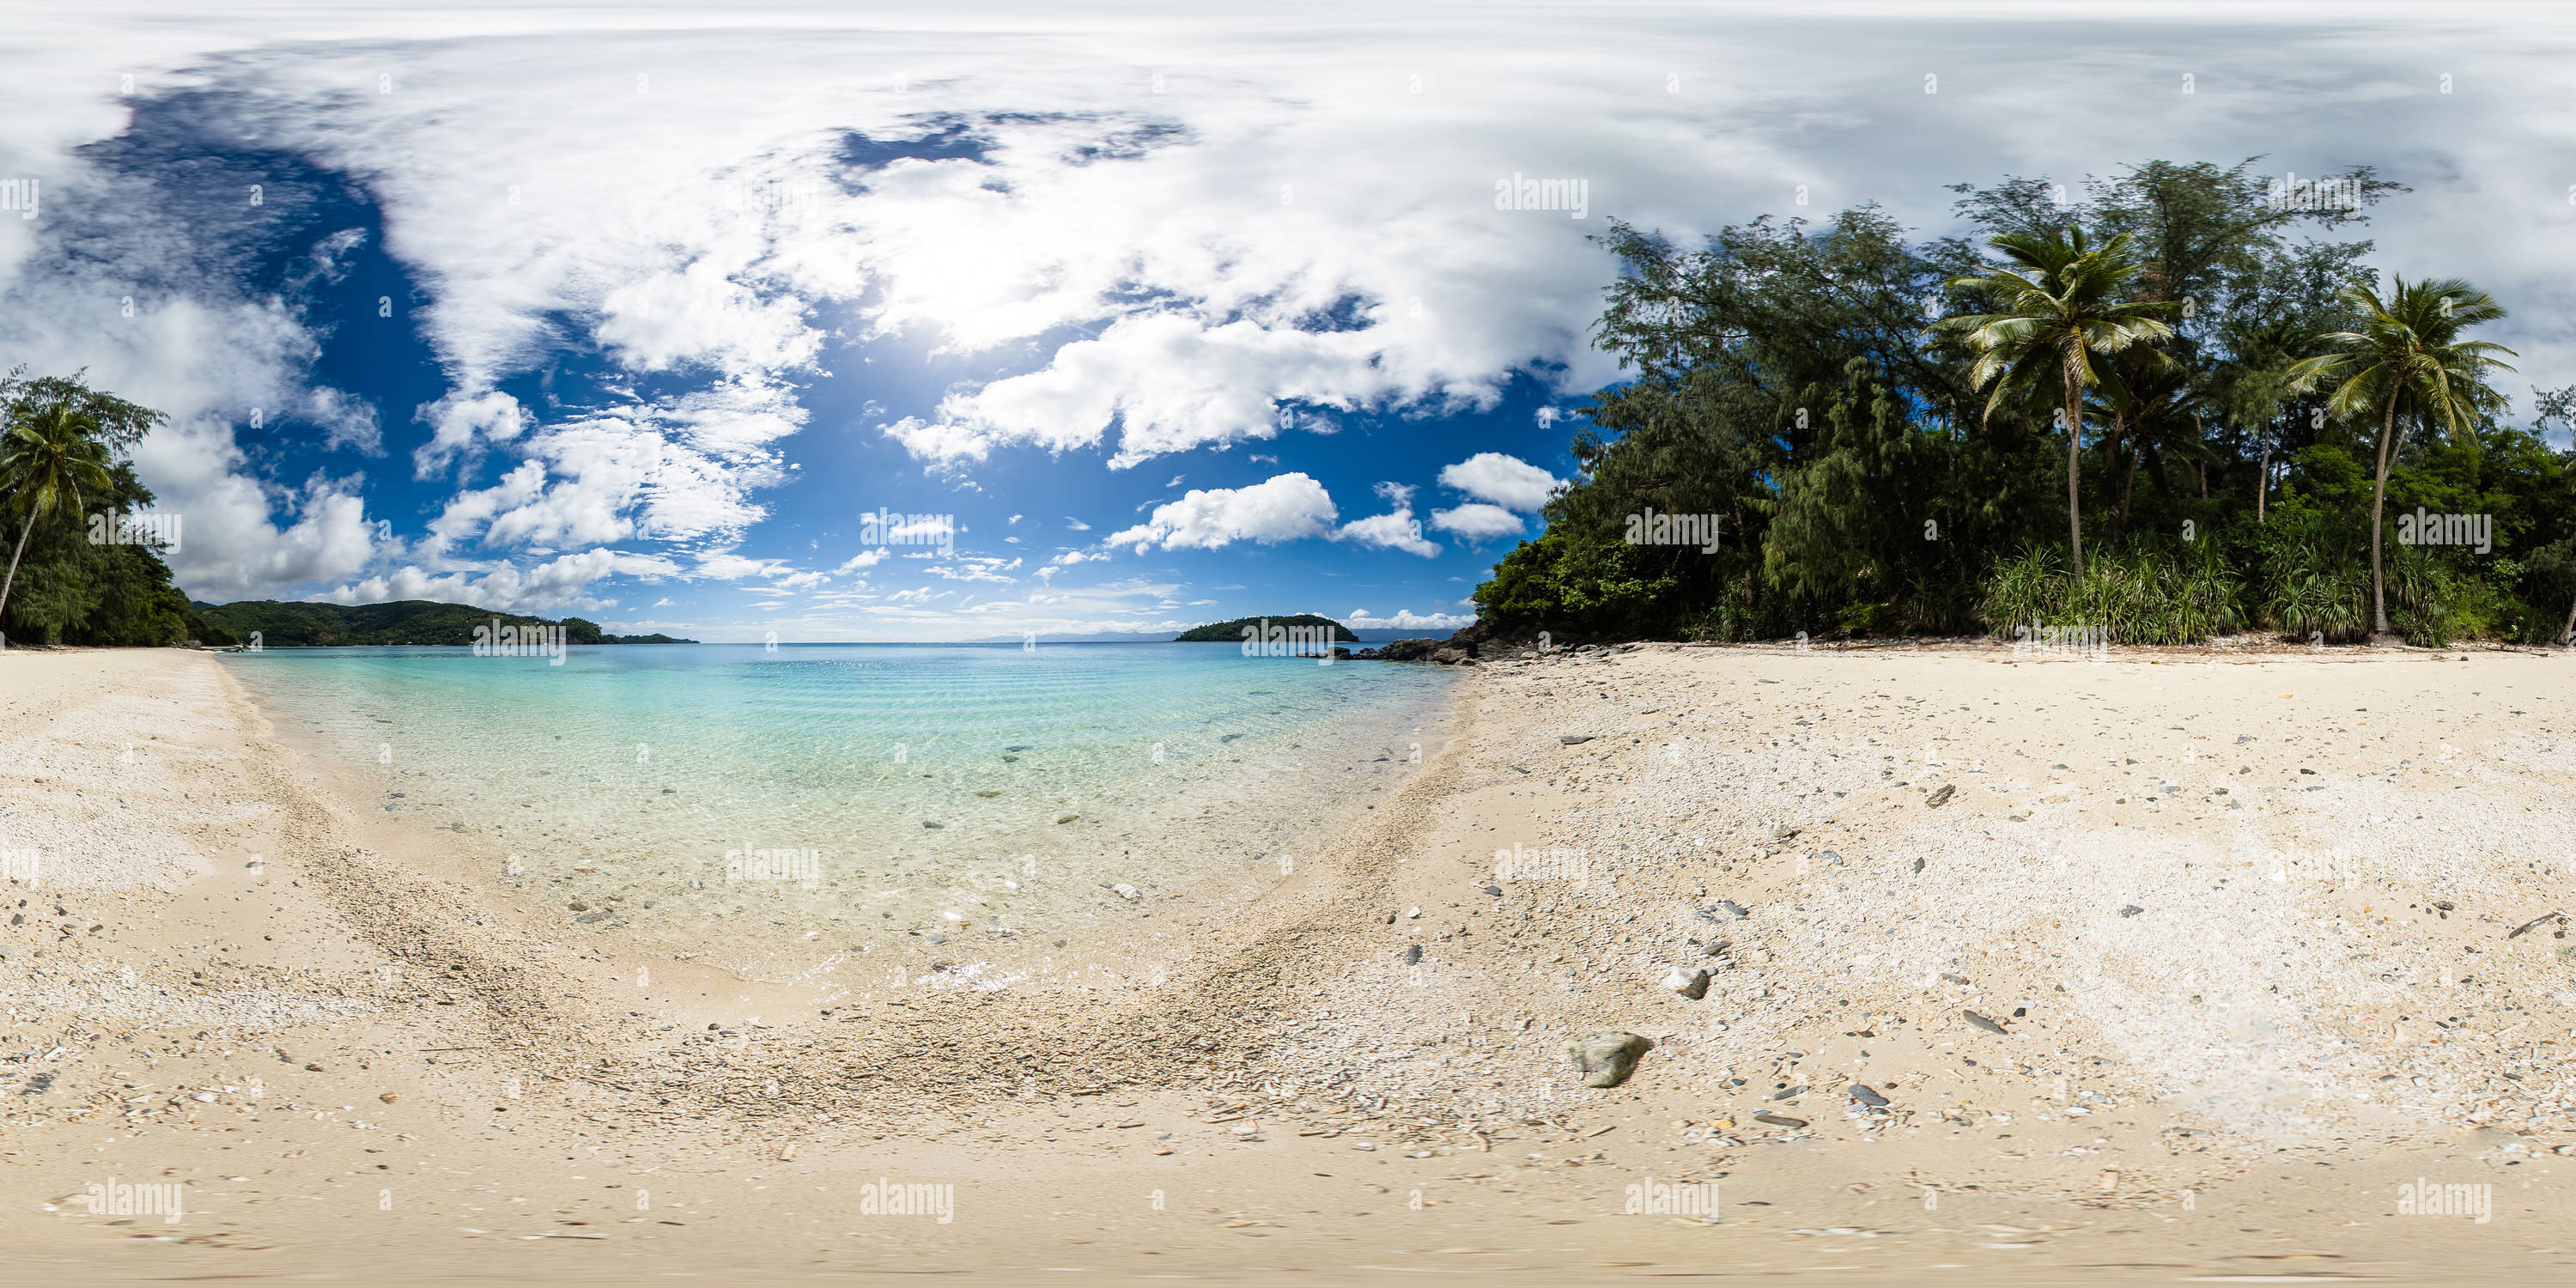 360 degree panoramic view of Tiamban Beach in Romblon Island. Philippines.